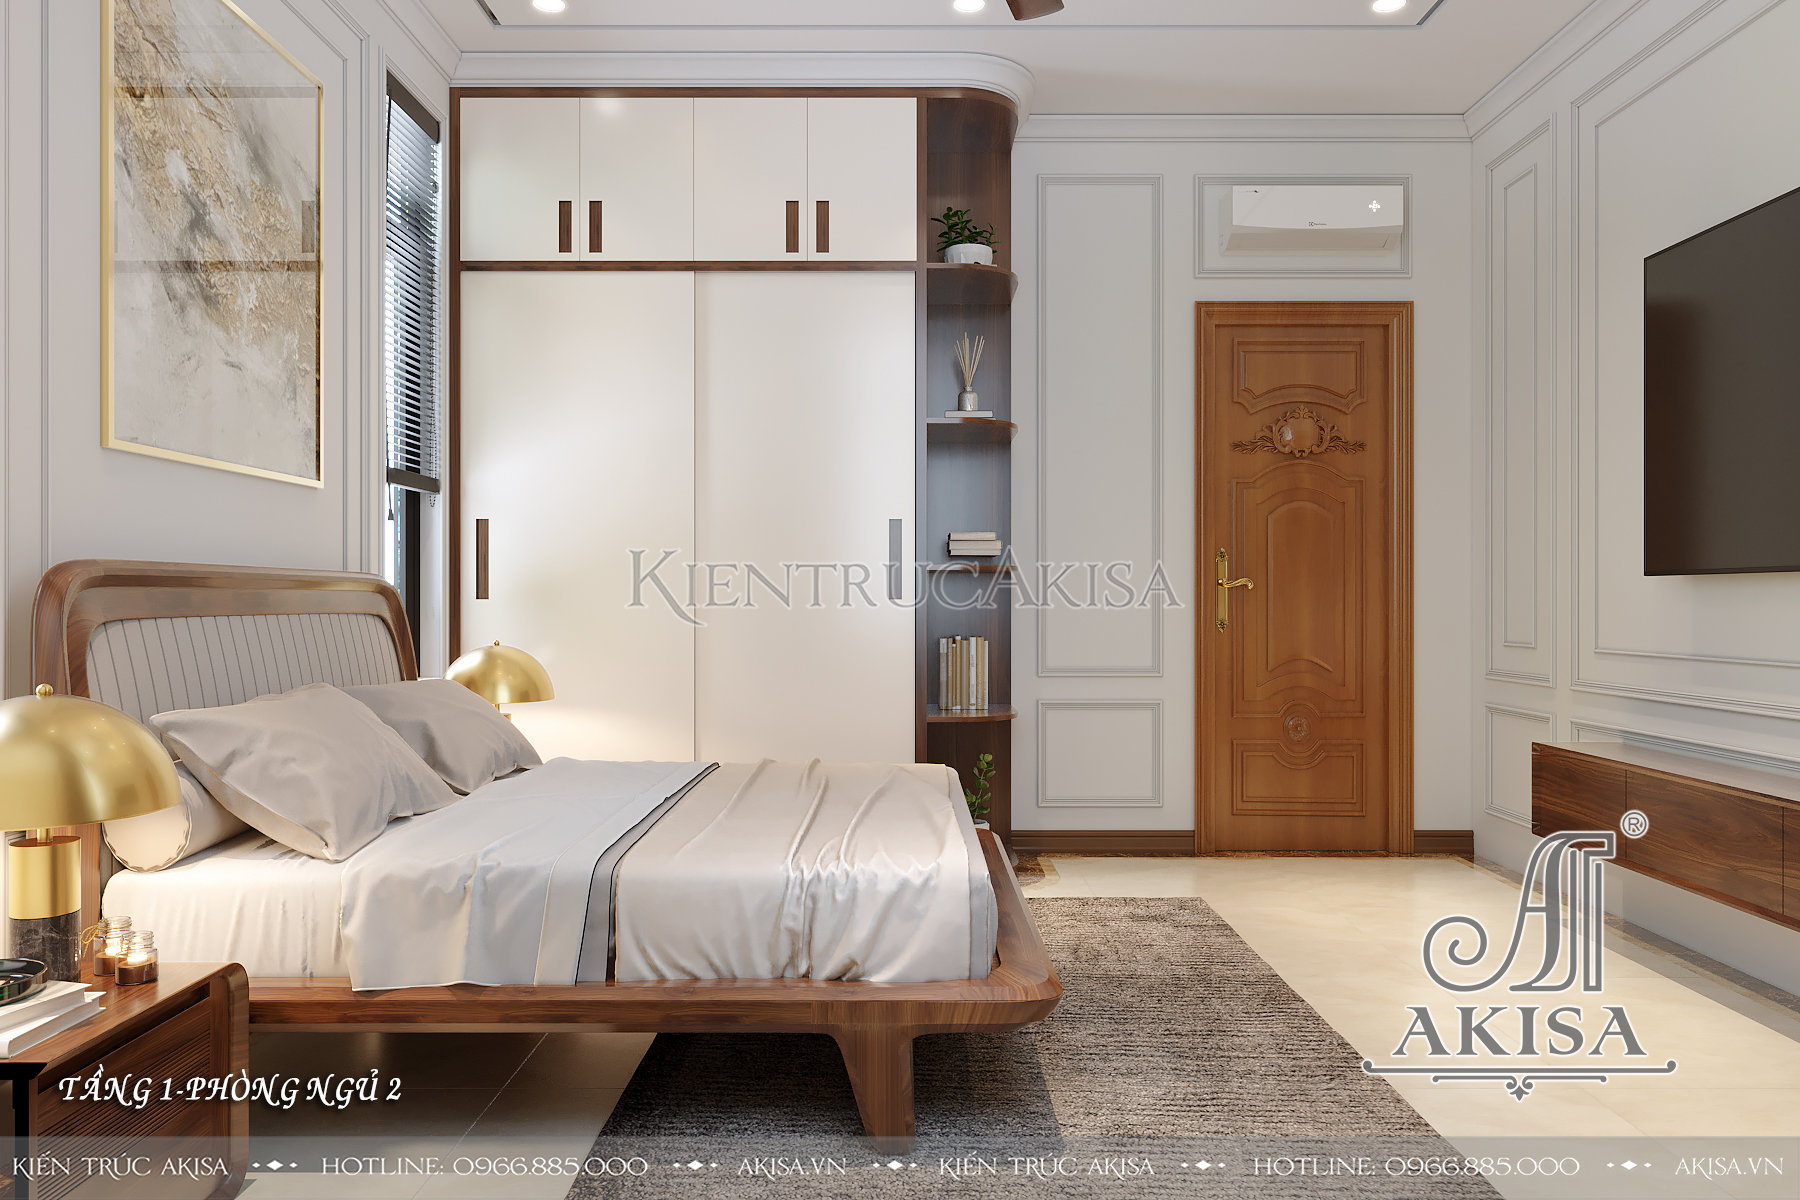 Mẫu nội thất gỗ tự nhiên cho biệt thự 2 tầng - phòng ngủ